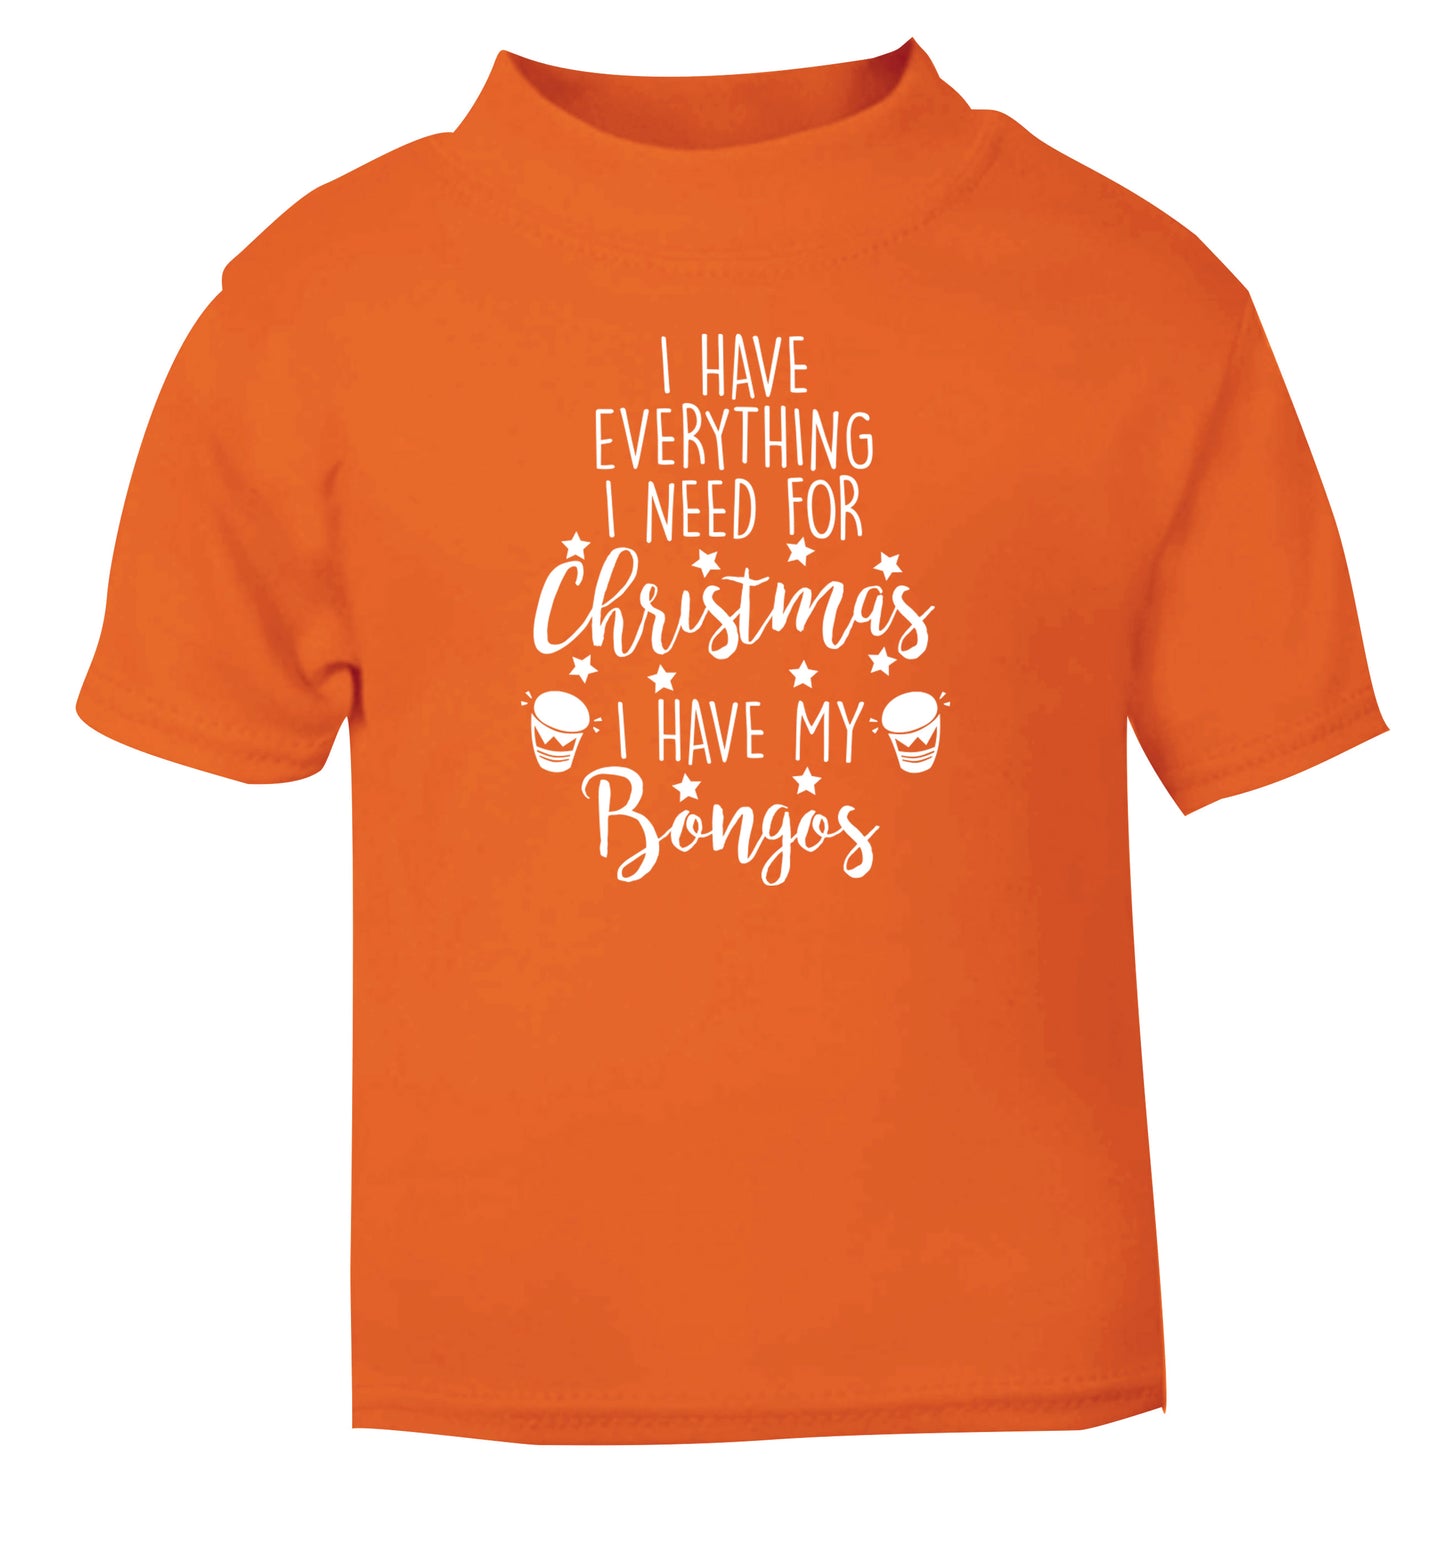 I have everything I need for Christmas I have my bongos! orange Baby Toddler Tshirt 2 Years